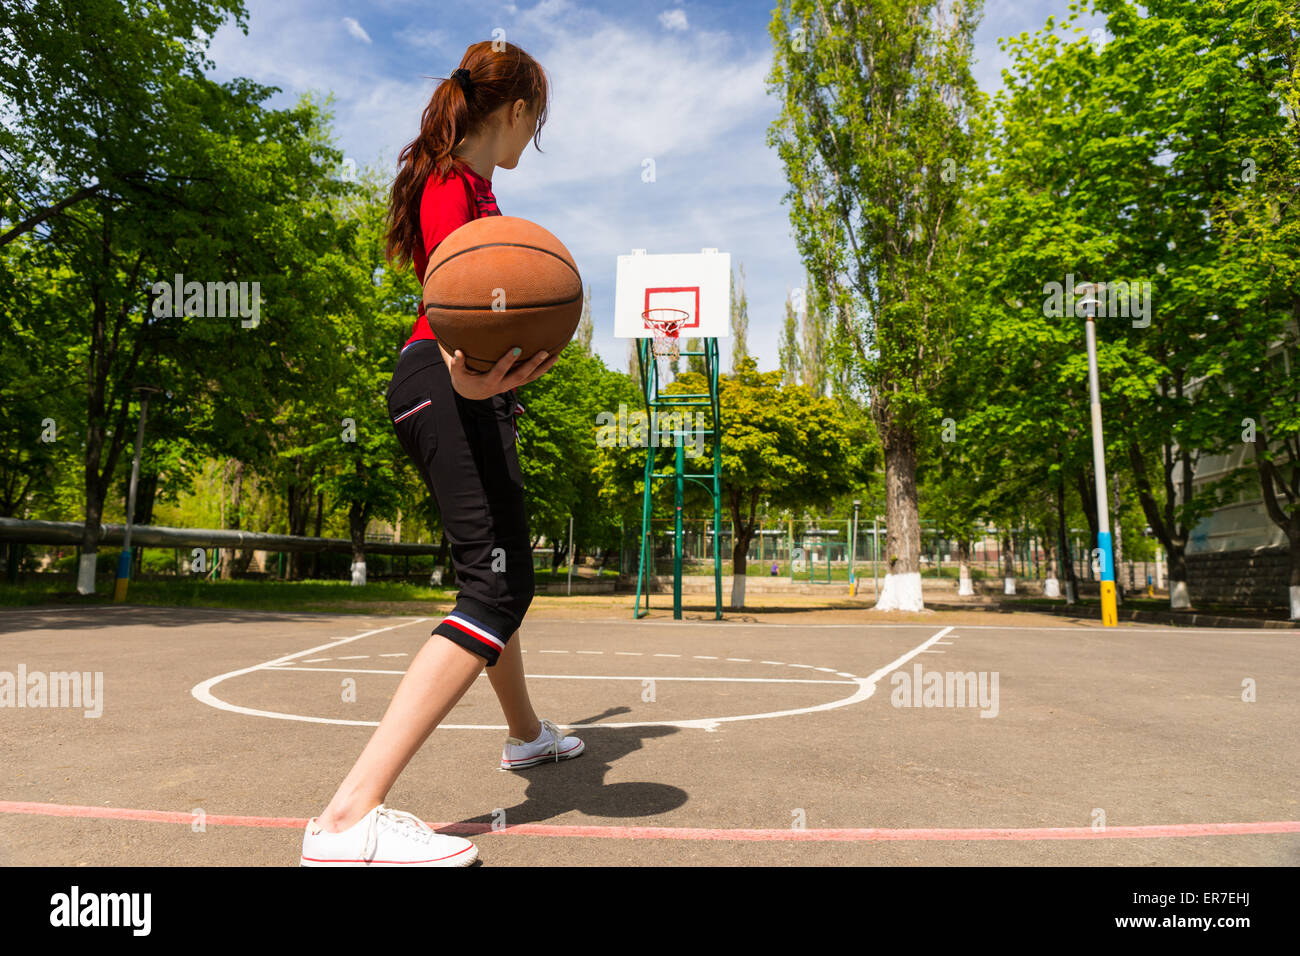 Vue arrière sur toute la longueur des jeunes Athletic Woman Holding Basket-ball, se préparant à jeter au panier Ballon libre du haut de la clé sur un terrain de basket-ball. Banque D'Images